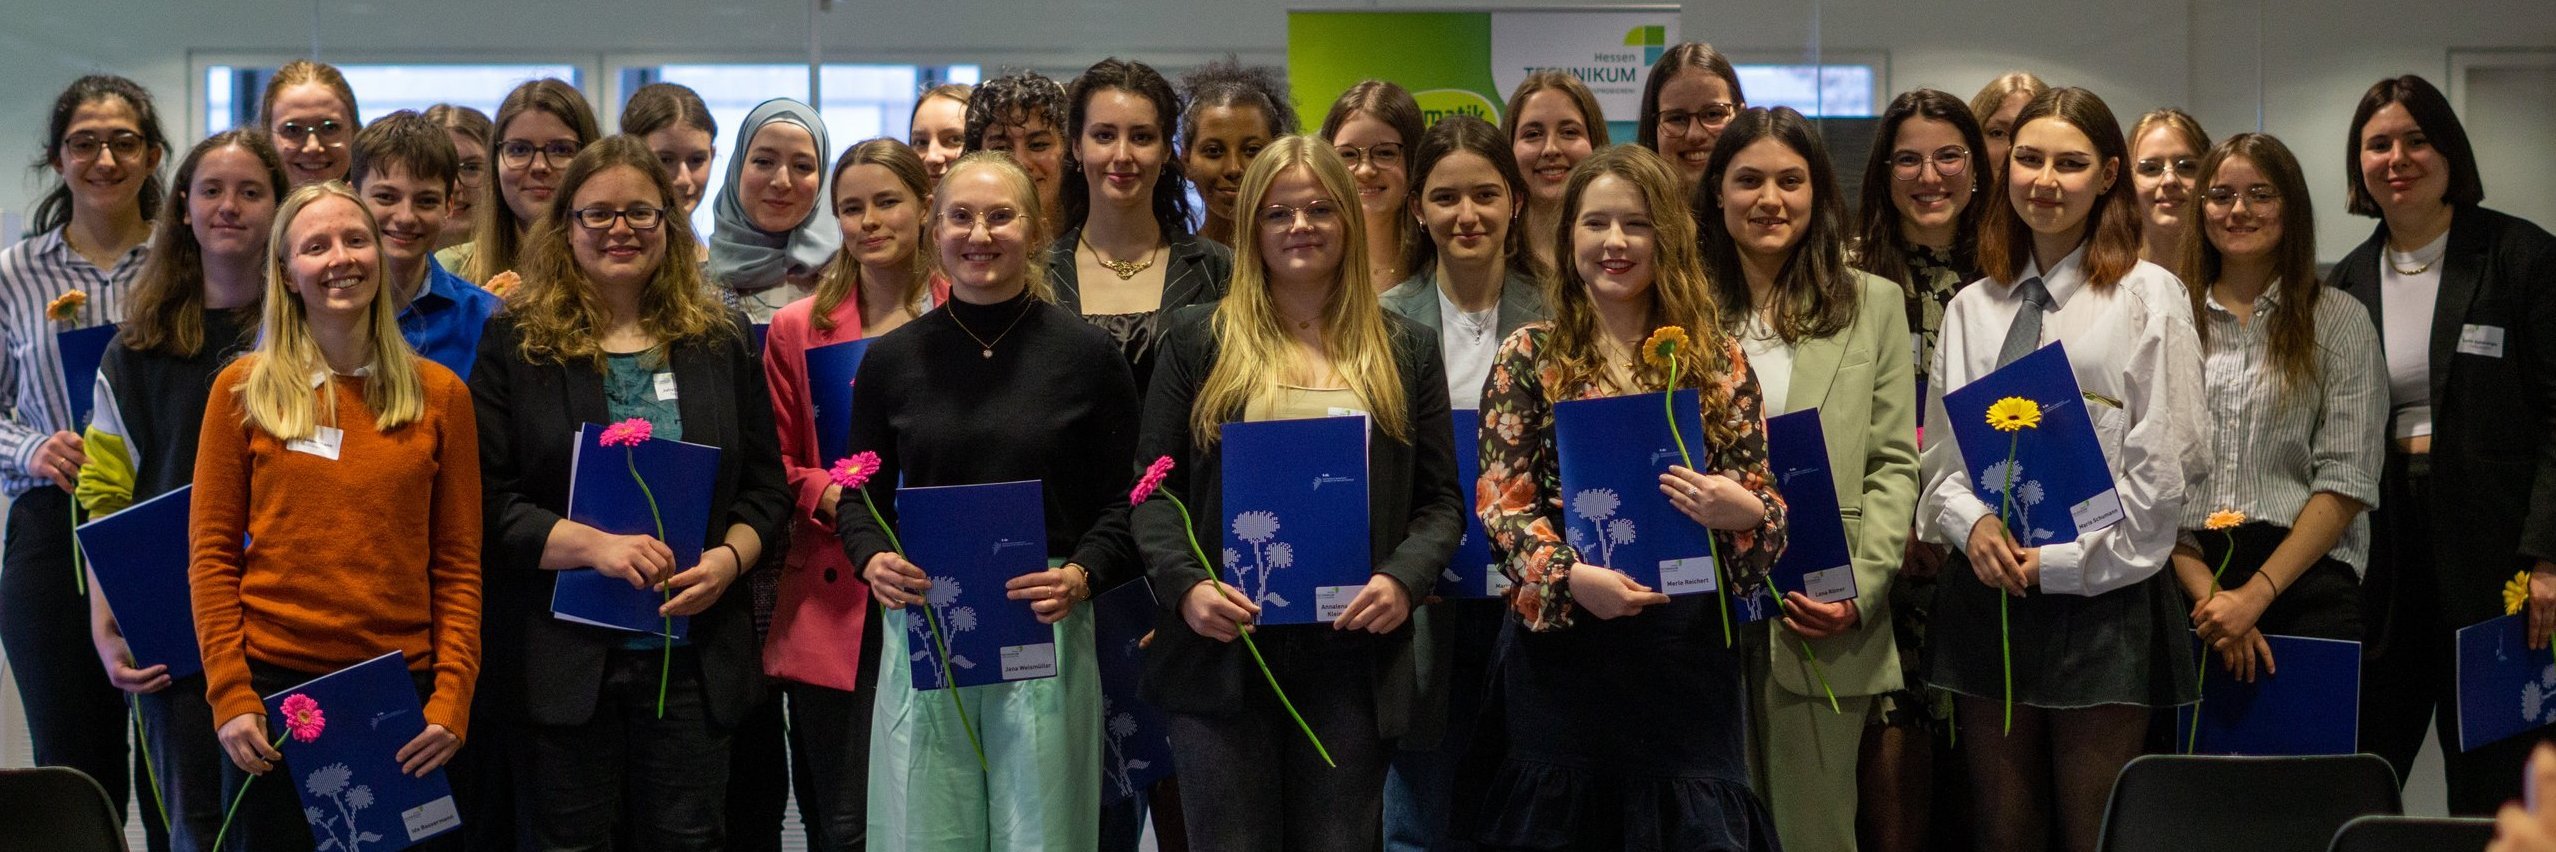 Abschlussbild der Teilnehmerinnen des Hessen-Technikums. 35 junge Frauen, stehen mit Zertifikaten und einer rose Blume in drei Reinen und lächen. 